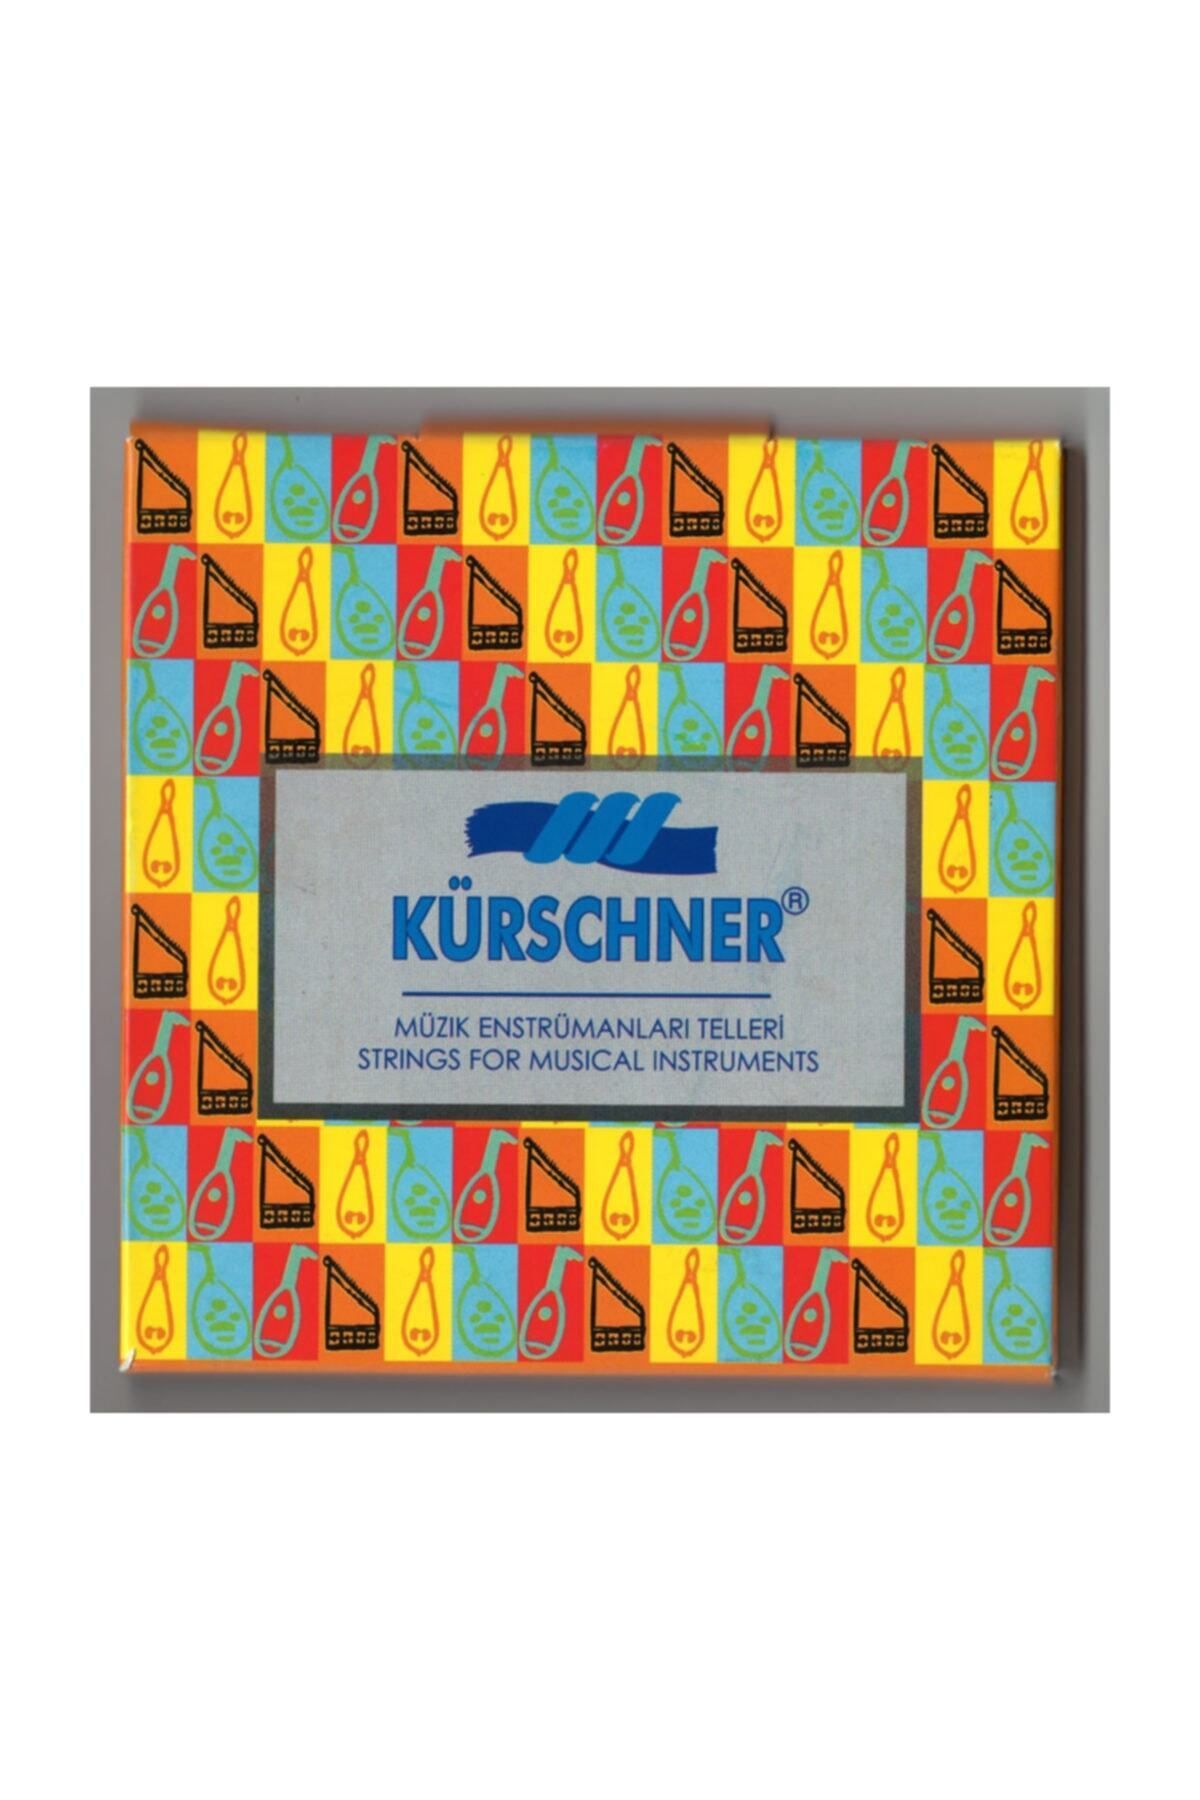 KÜRSCHNER Kurschner Premium Carbon Arap 1 Ud Teli (CC GG DD AA FF C)